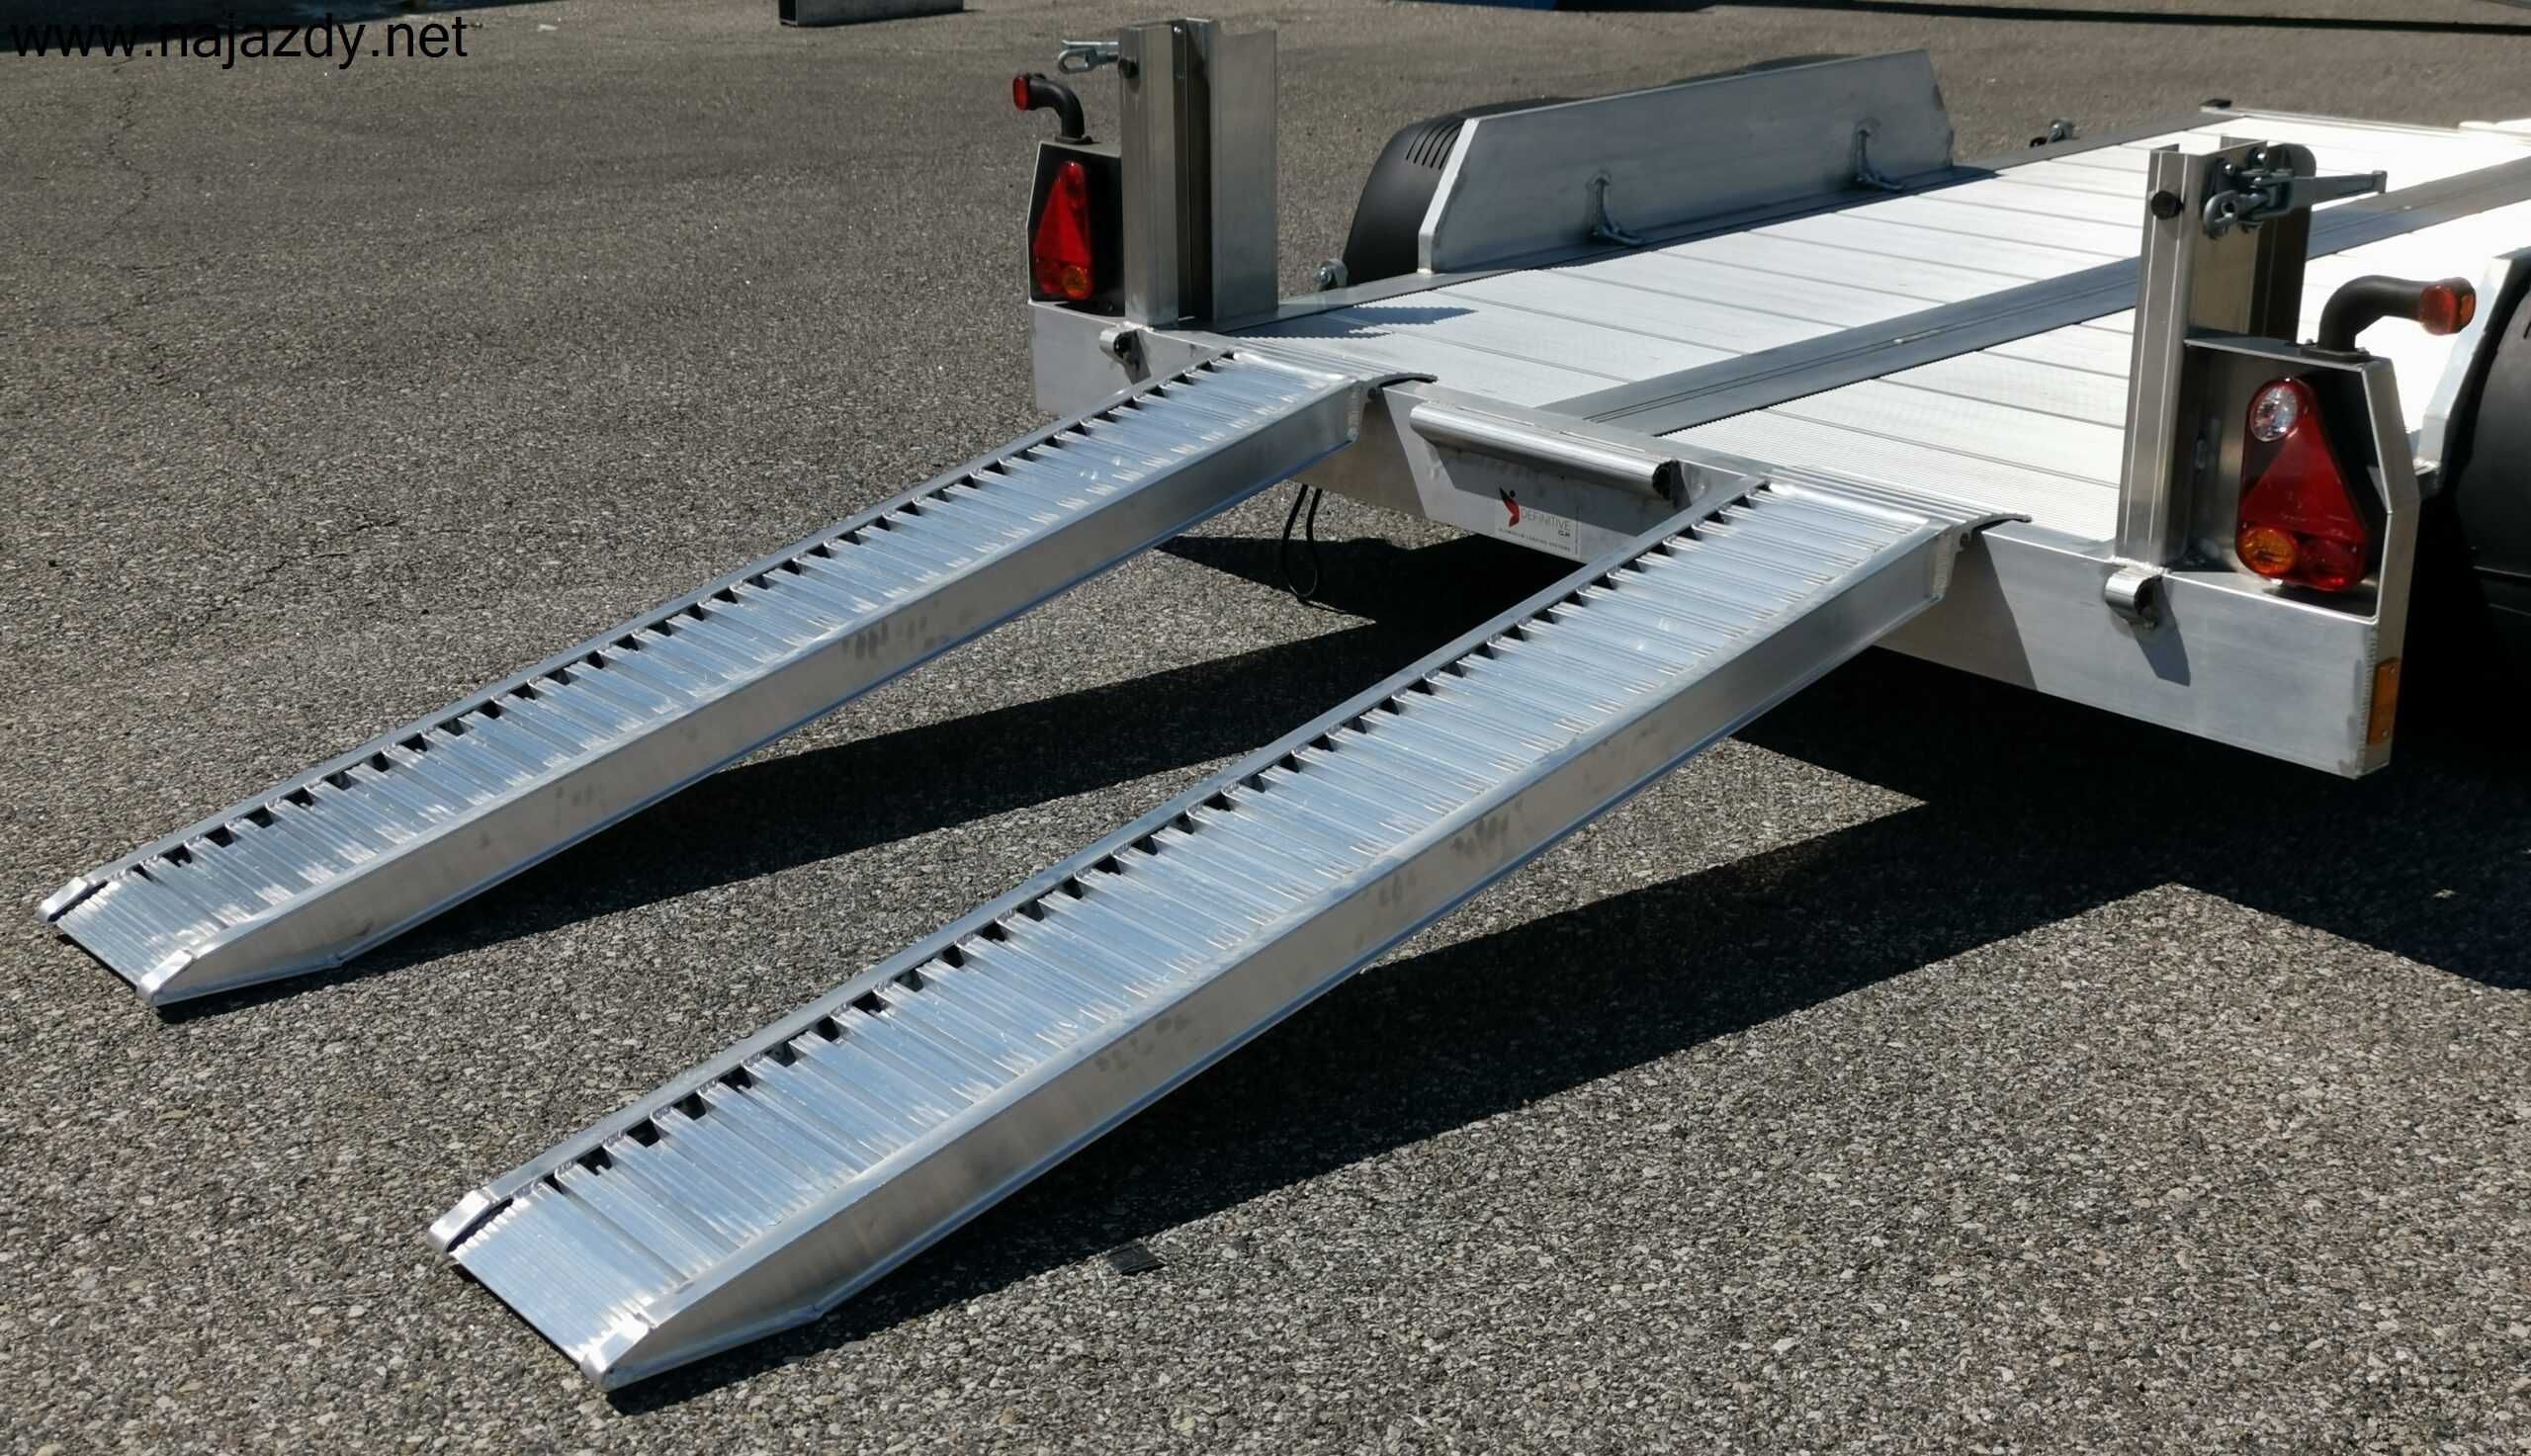 Najazdy Aluminiowe 2,5m 4,5t Cert. CE/Gwarancja/Dostawa 0zł